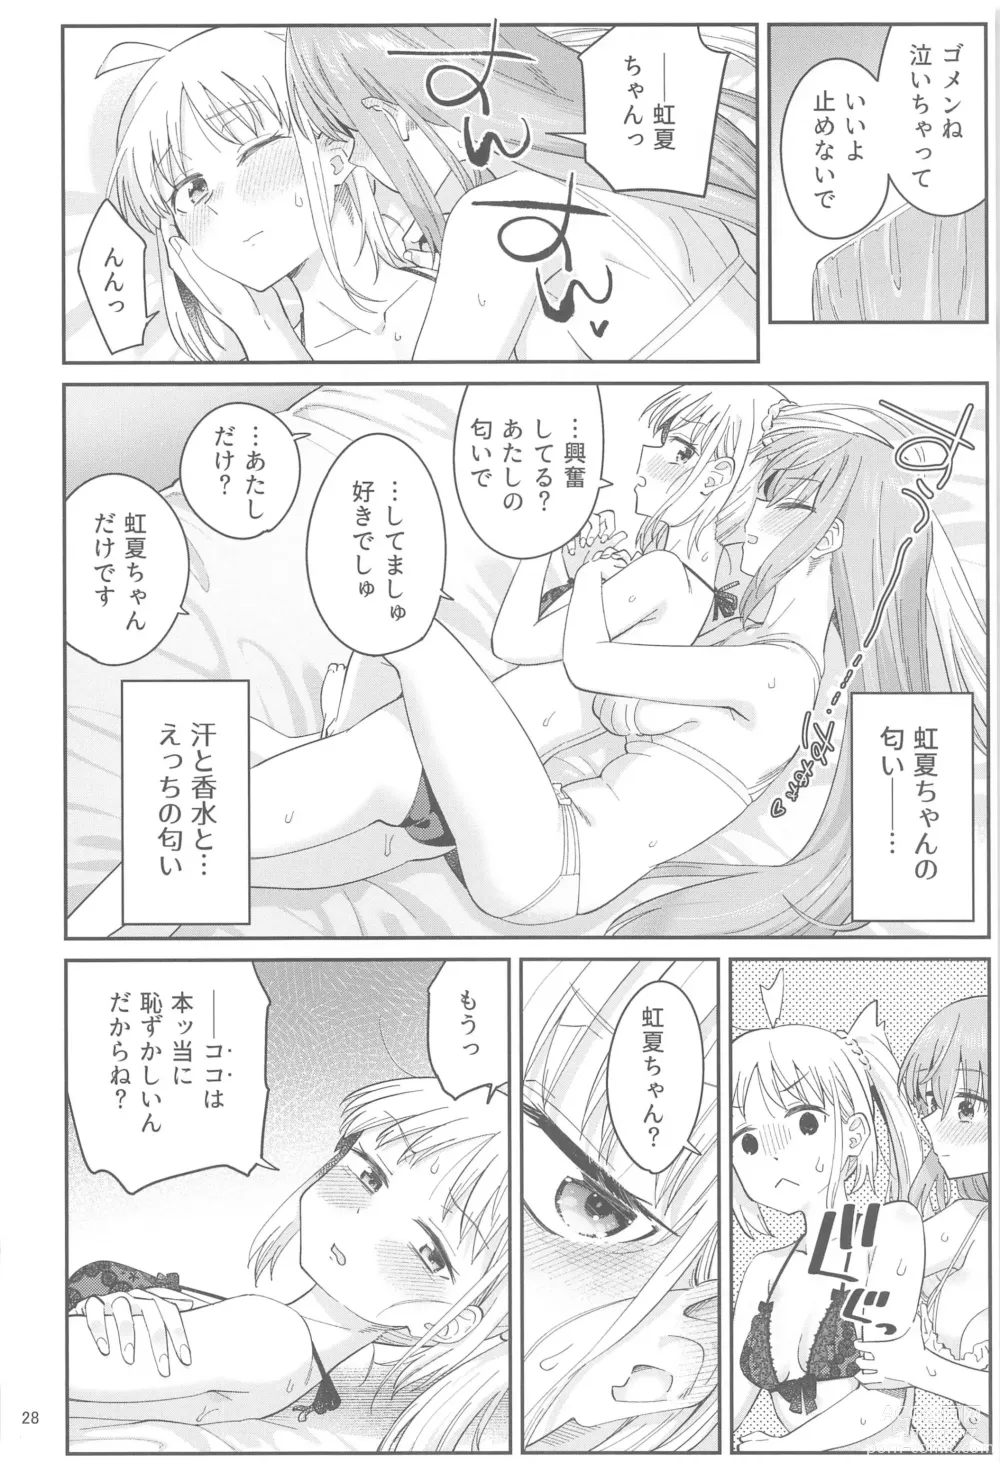 Page 27 of doujinshi Netsu o Mazete Shin o Tokashite